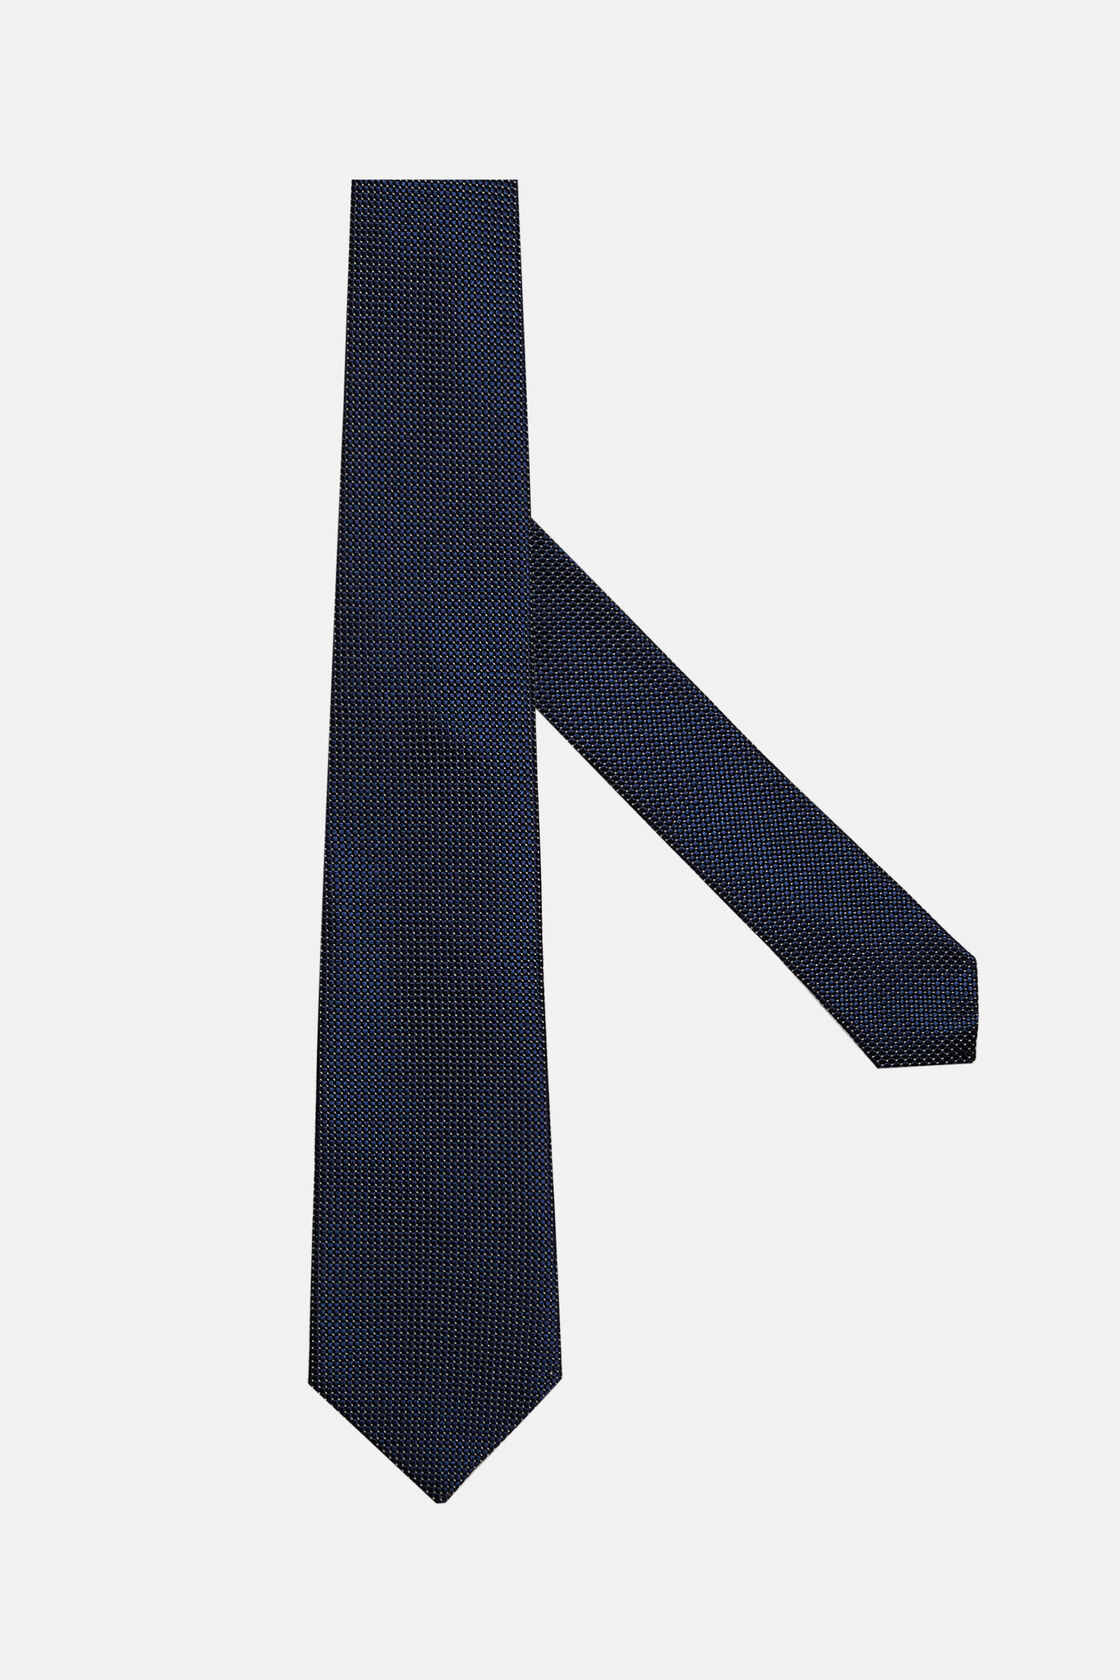 Gravata em mistura de seda com padrão micro, Navy blue, hi-res